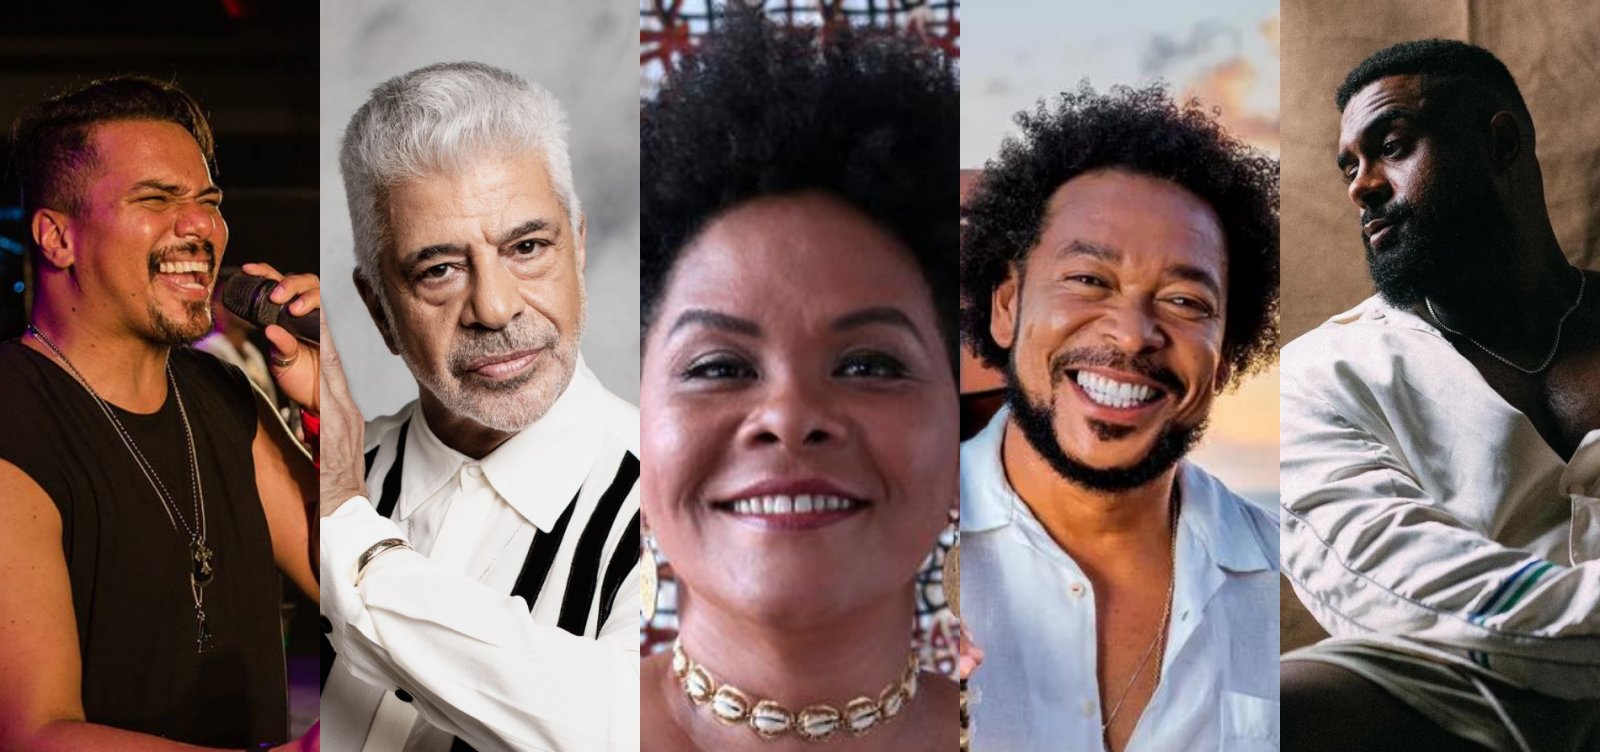 Espetáculos teatrais se destacam na agenda cultural em Santos